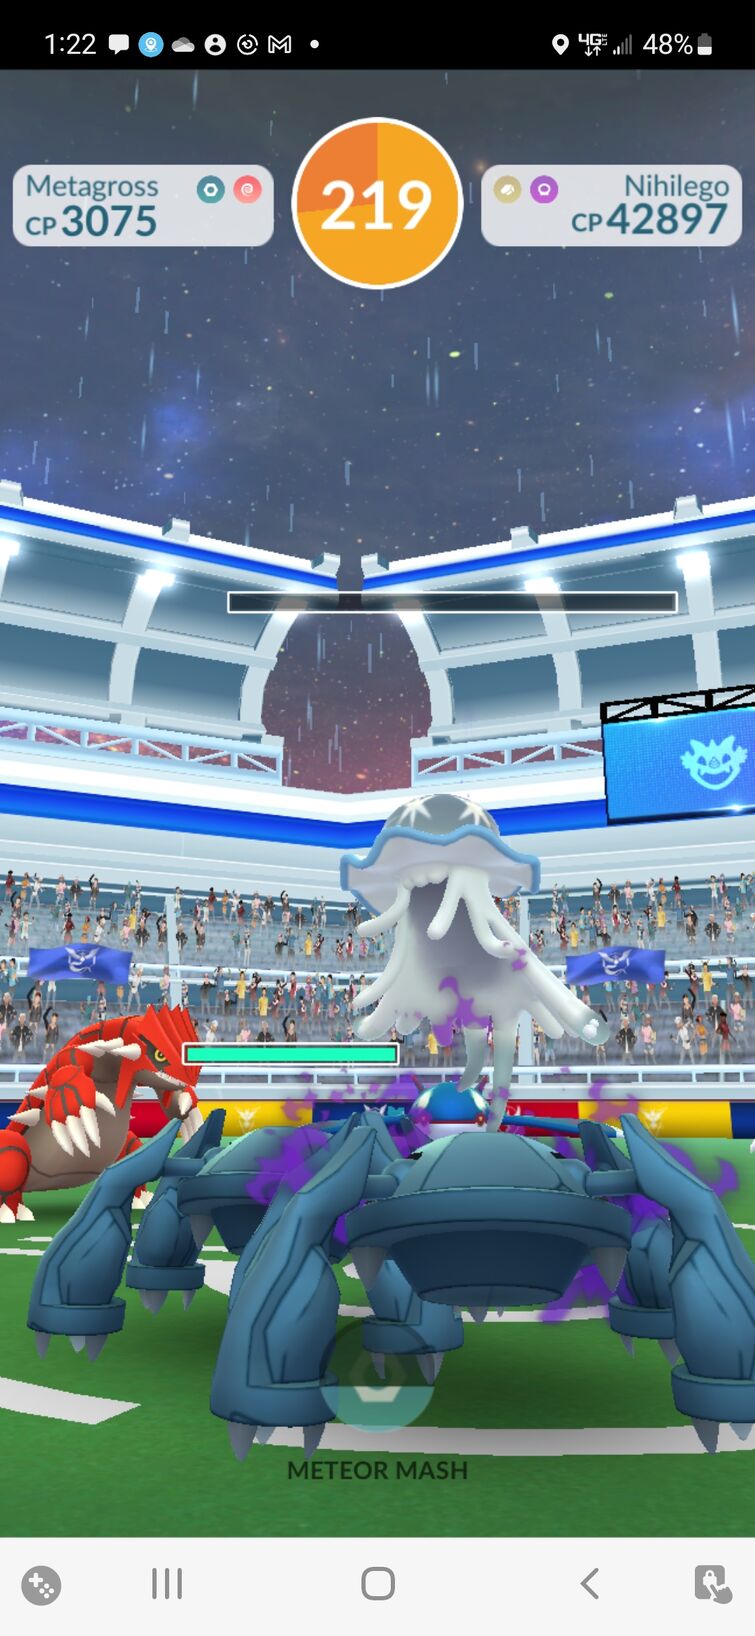 Nihilego acidentalmente substitui Guzzlord em Pokémon GO Raids